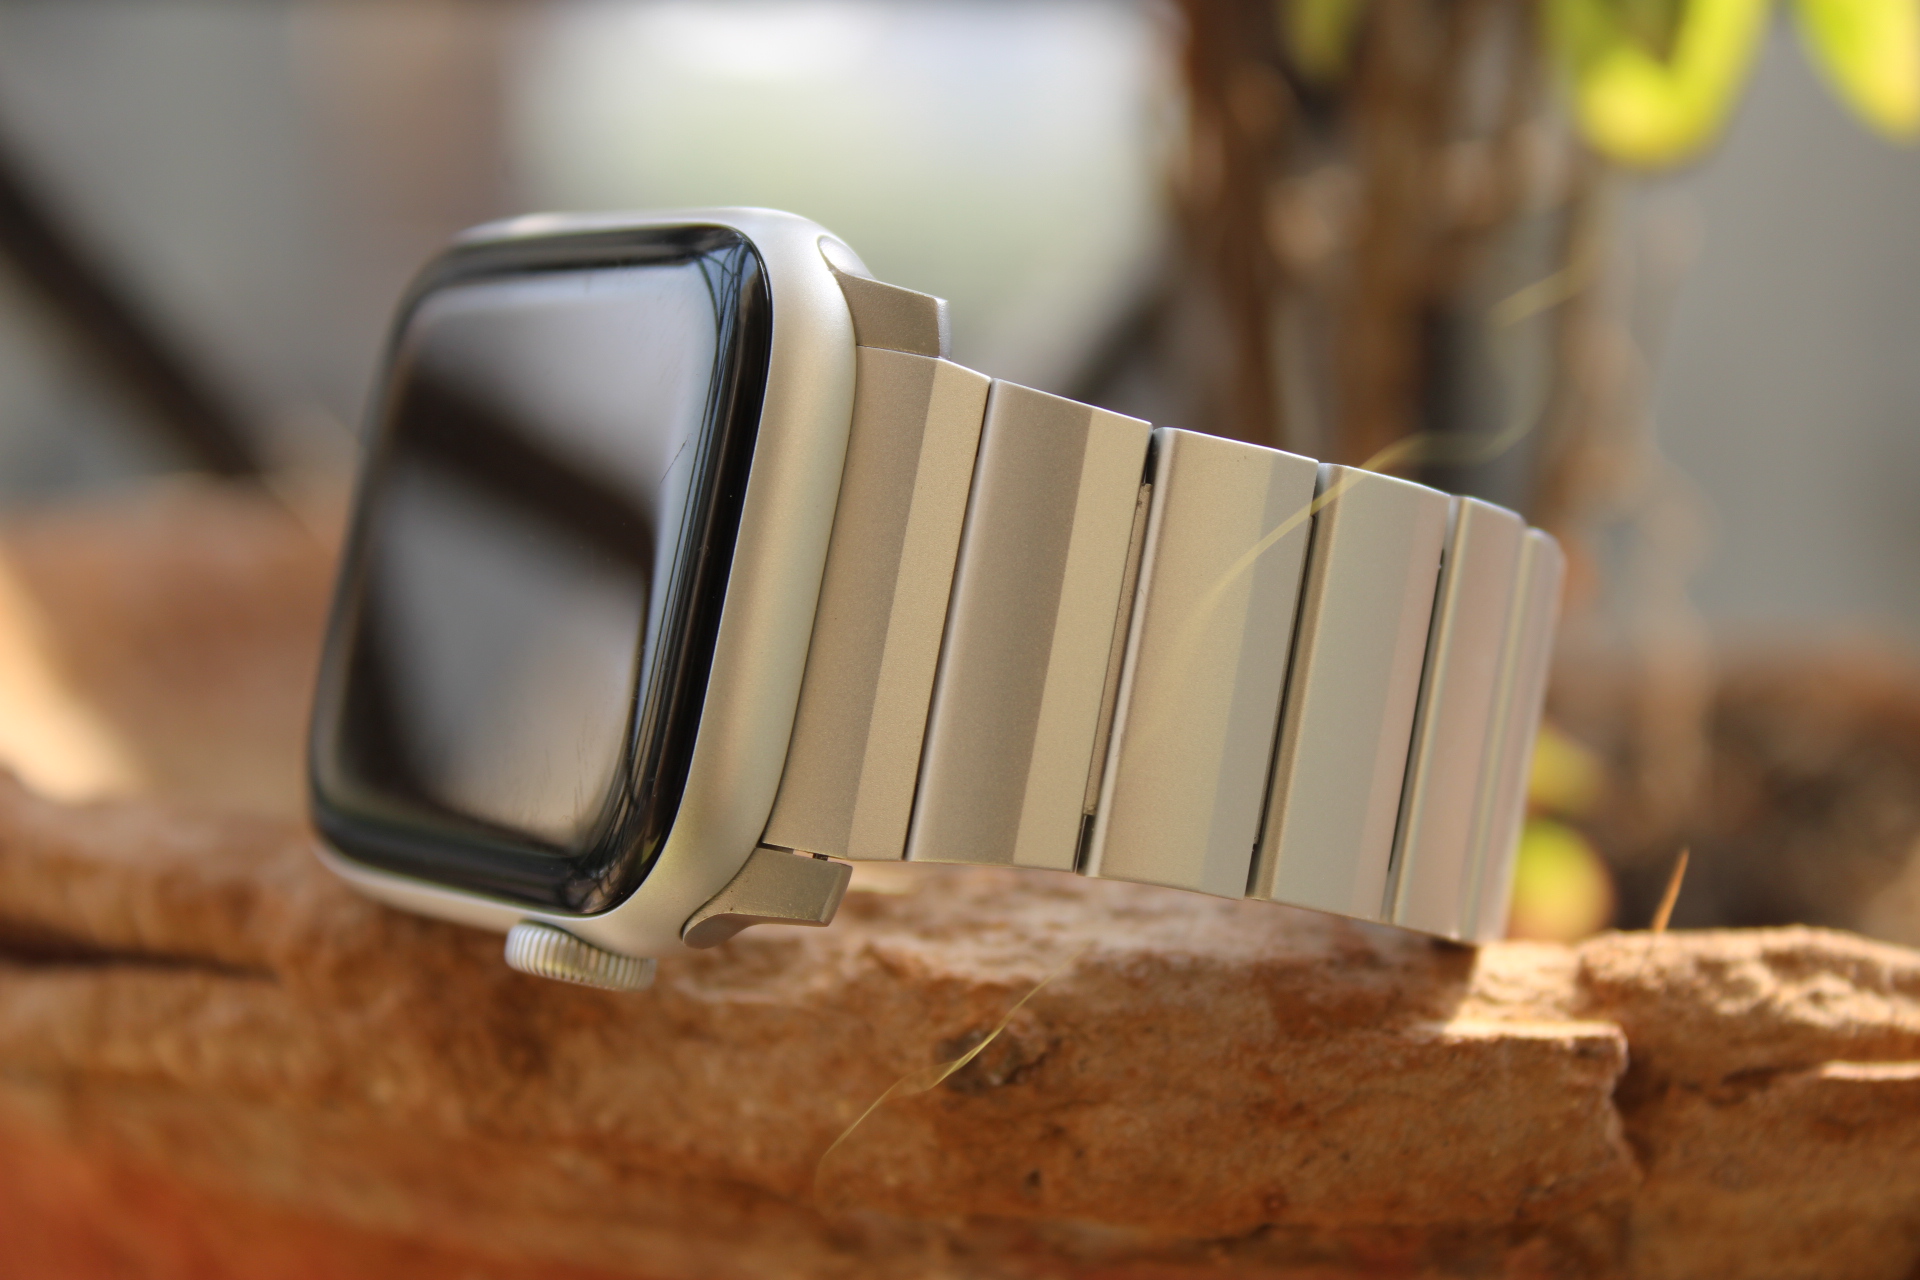 Nomad Aluminum Band on Apple Watch SE.